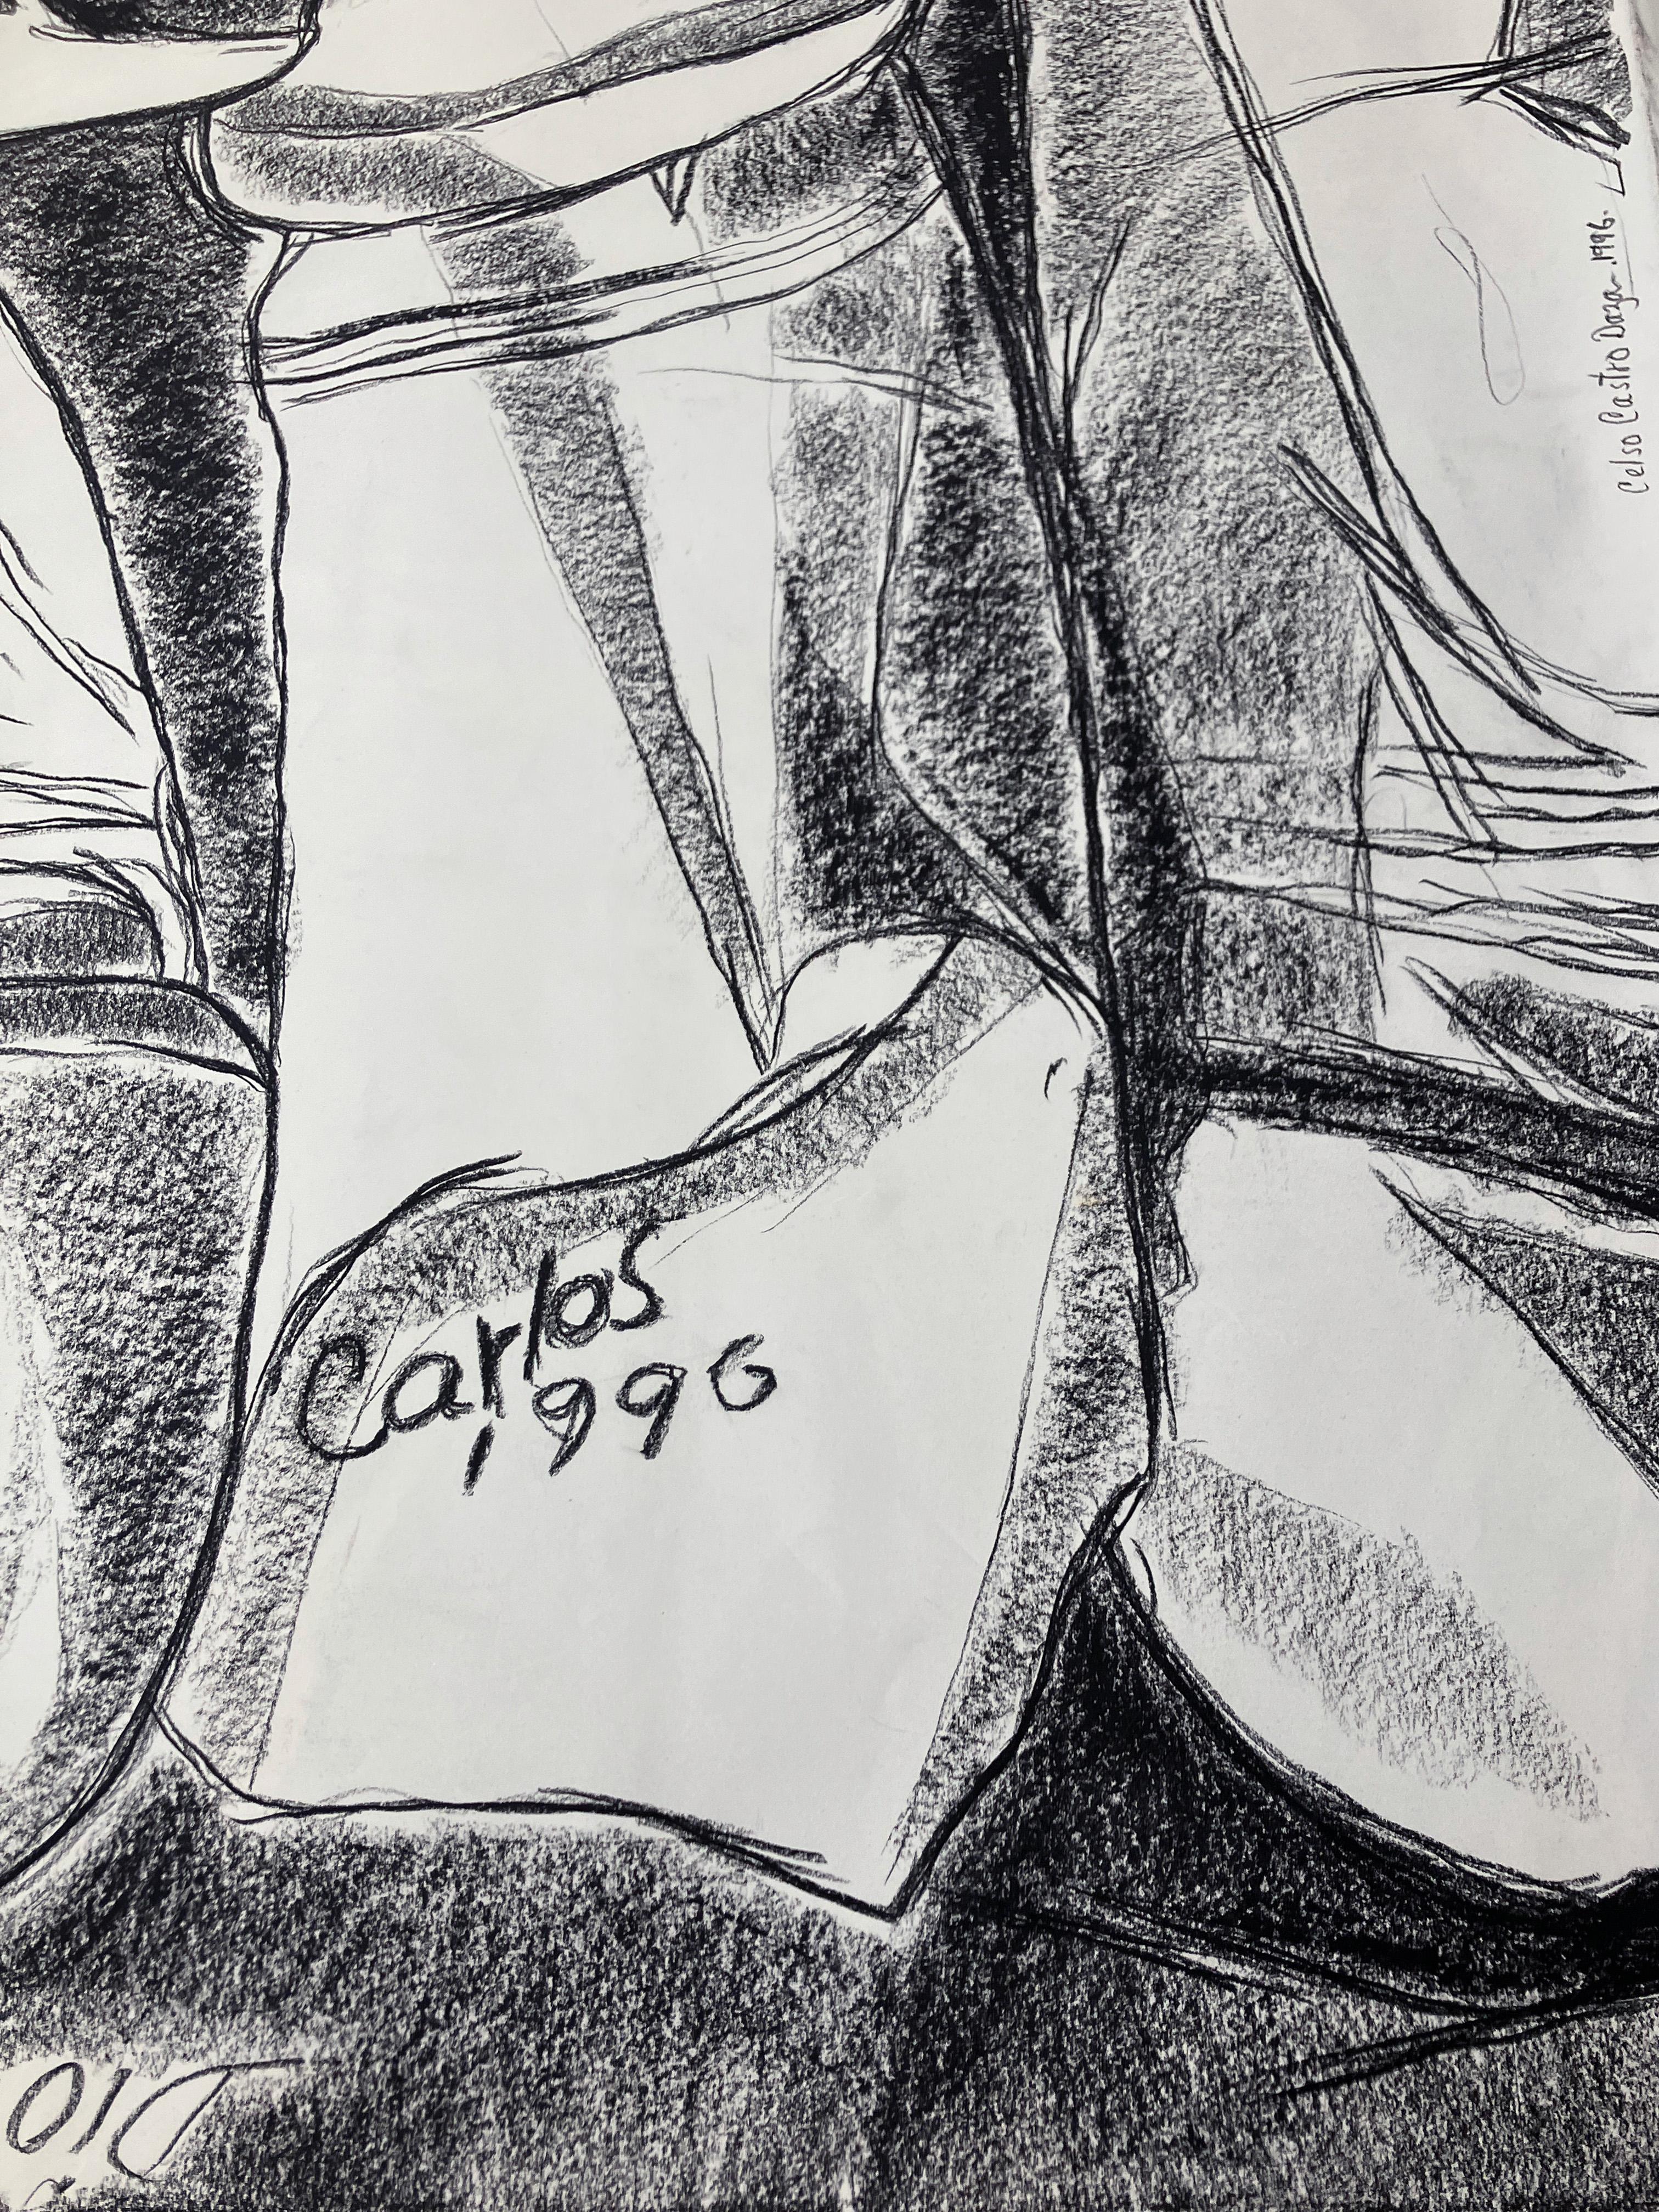 Die Jungen – Penis. Kohlestift auf archivtauglichem Papier (Zeitgenössisch), Art, von Celso José Castro Daza